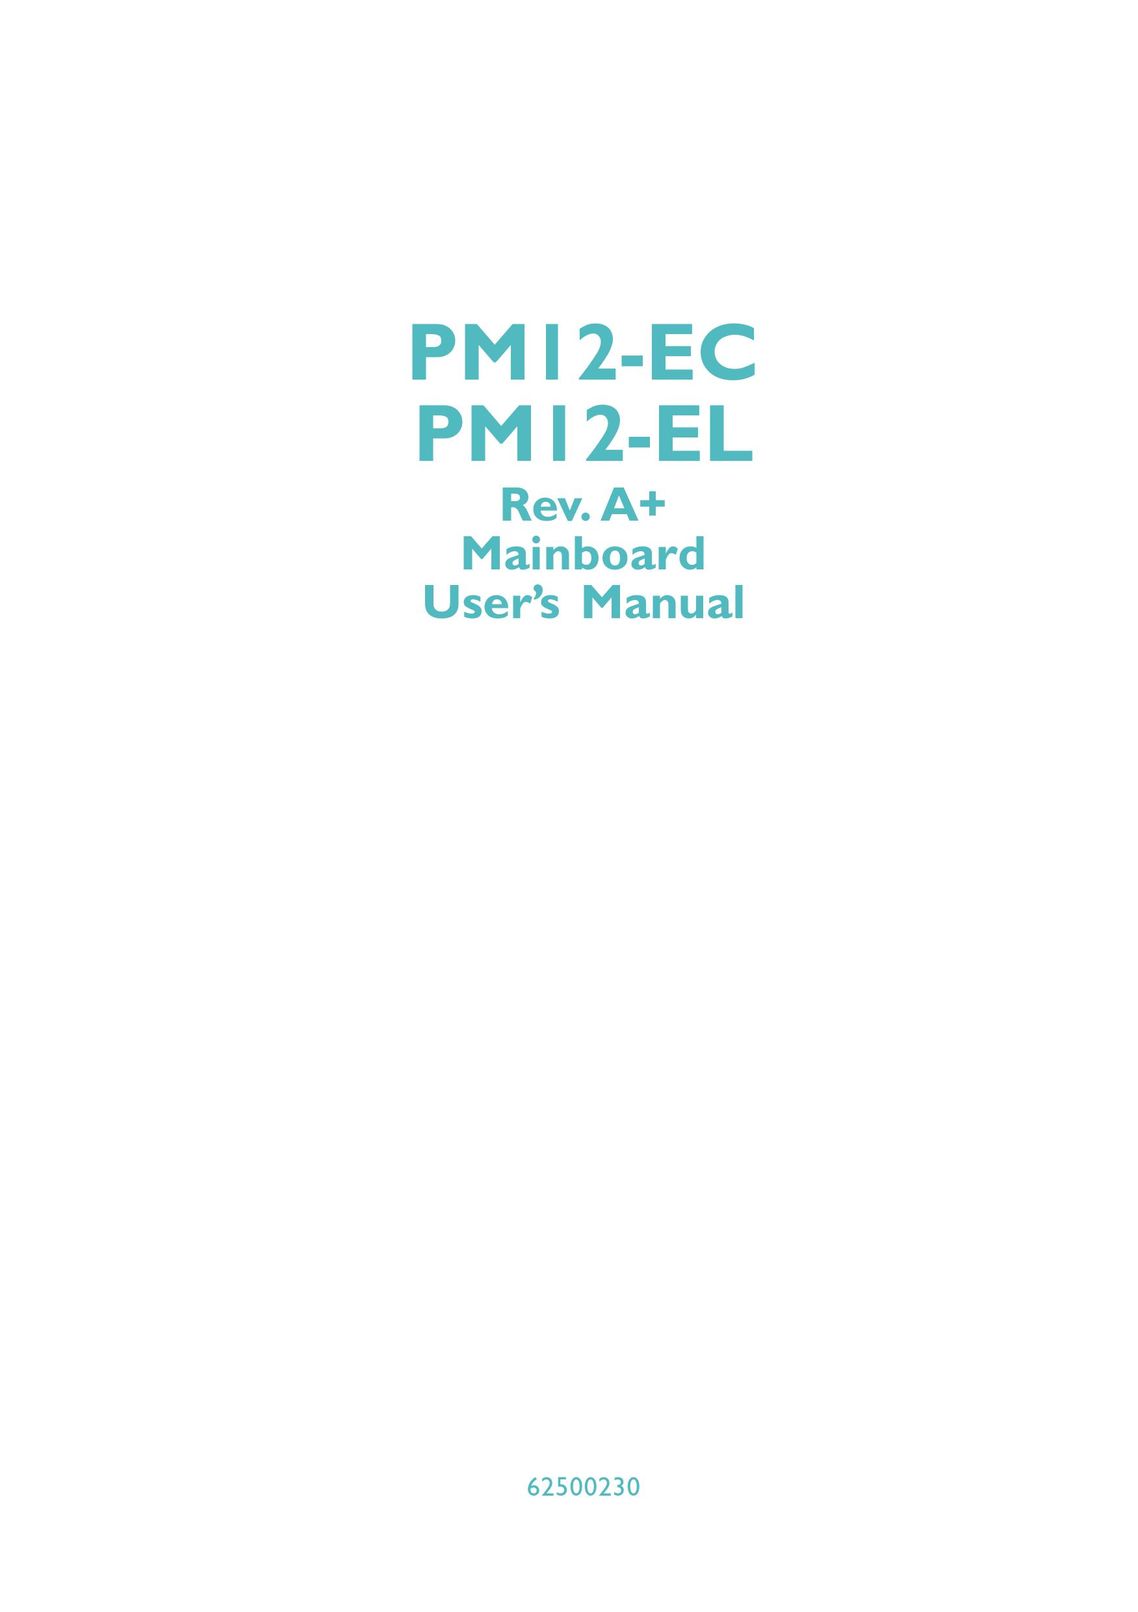 DFI PM12-EL Computer Hardware User Manual